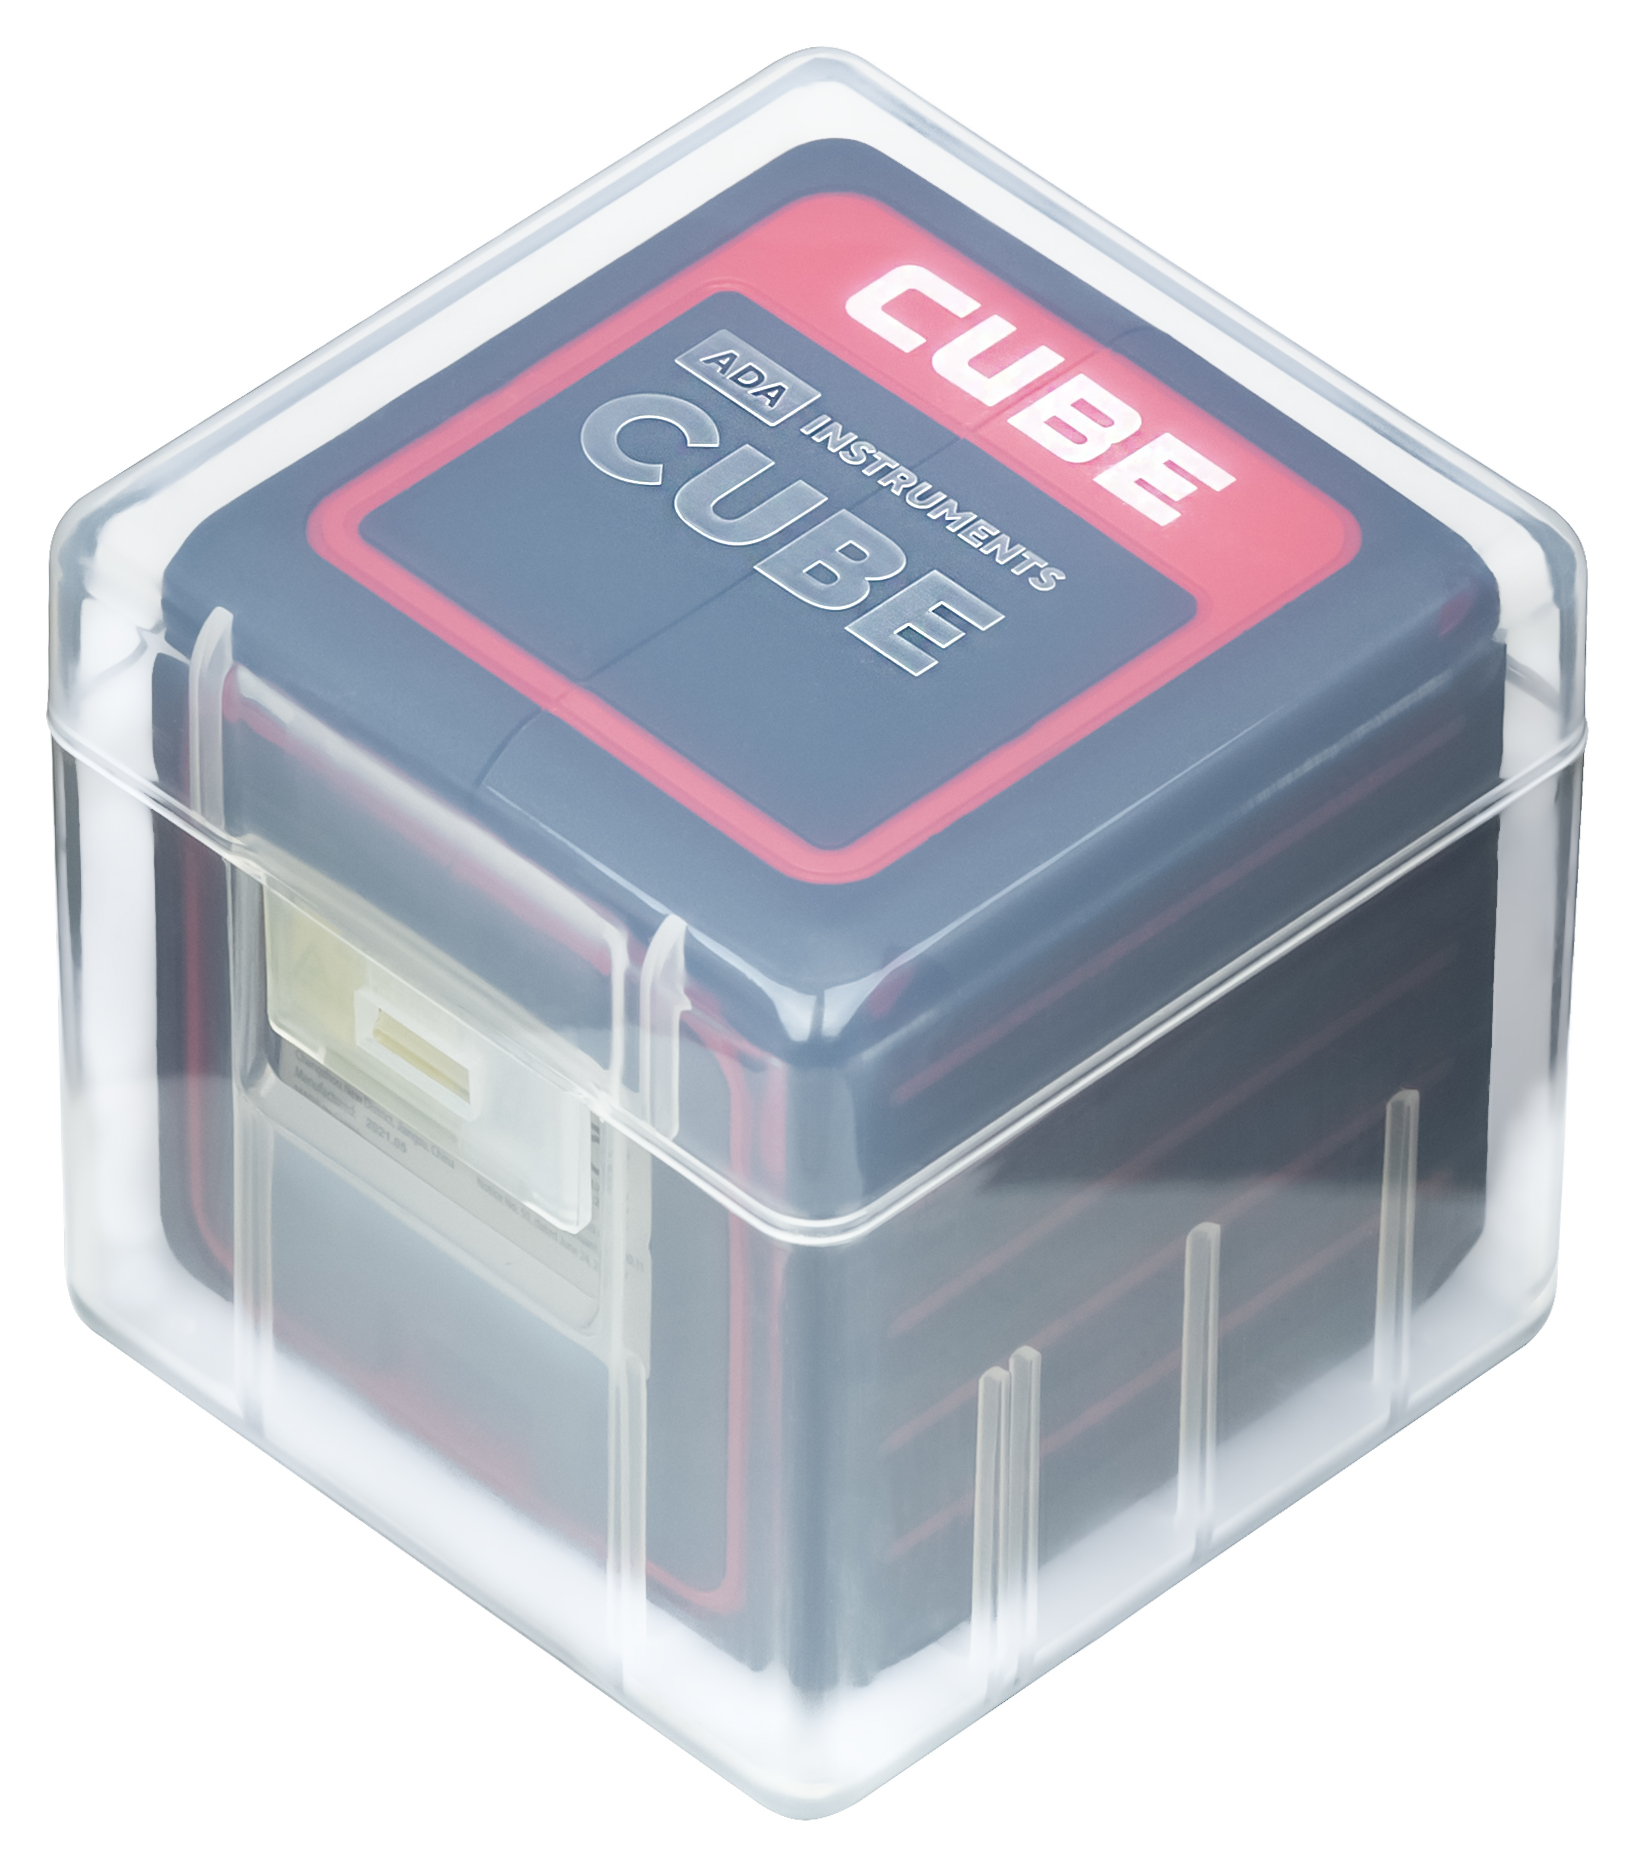 Лазерный уровень cube basic edition. Лазерный уровень ada. Защитное стекло для лазерного уровня ada.